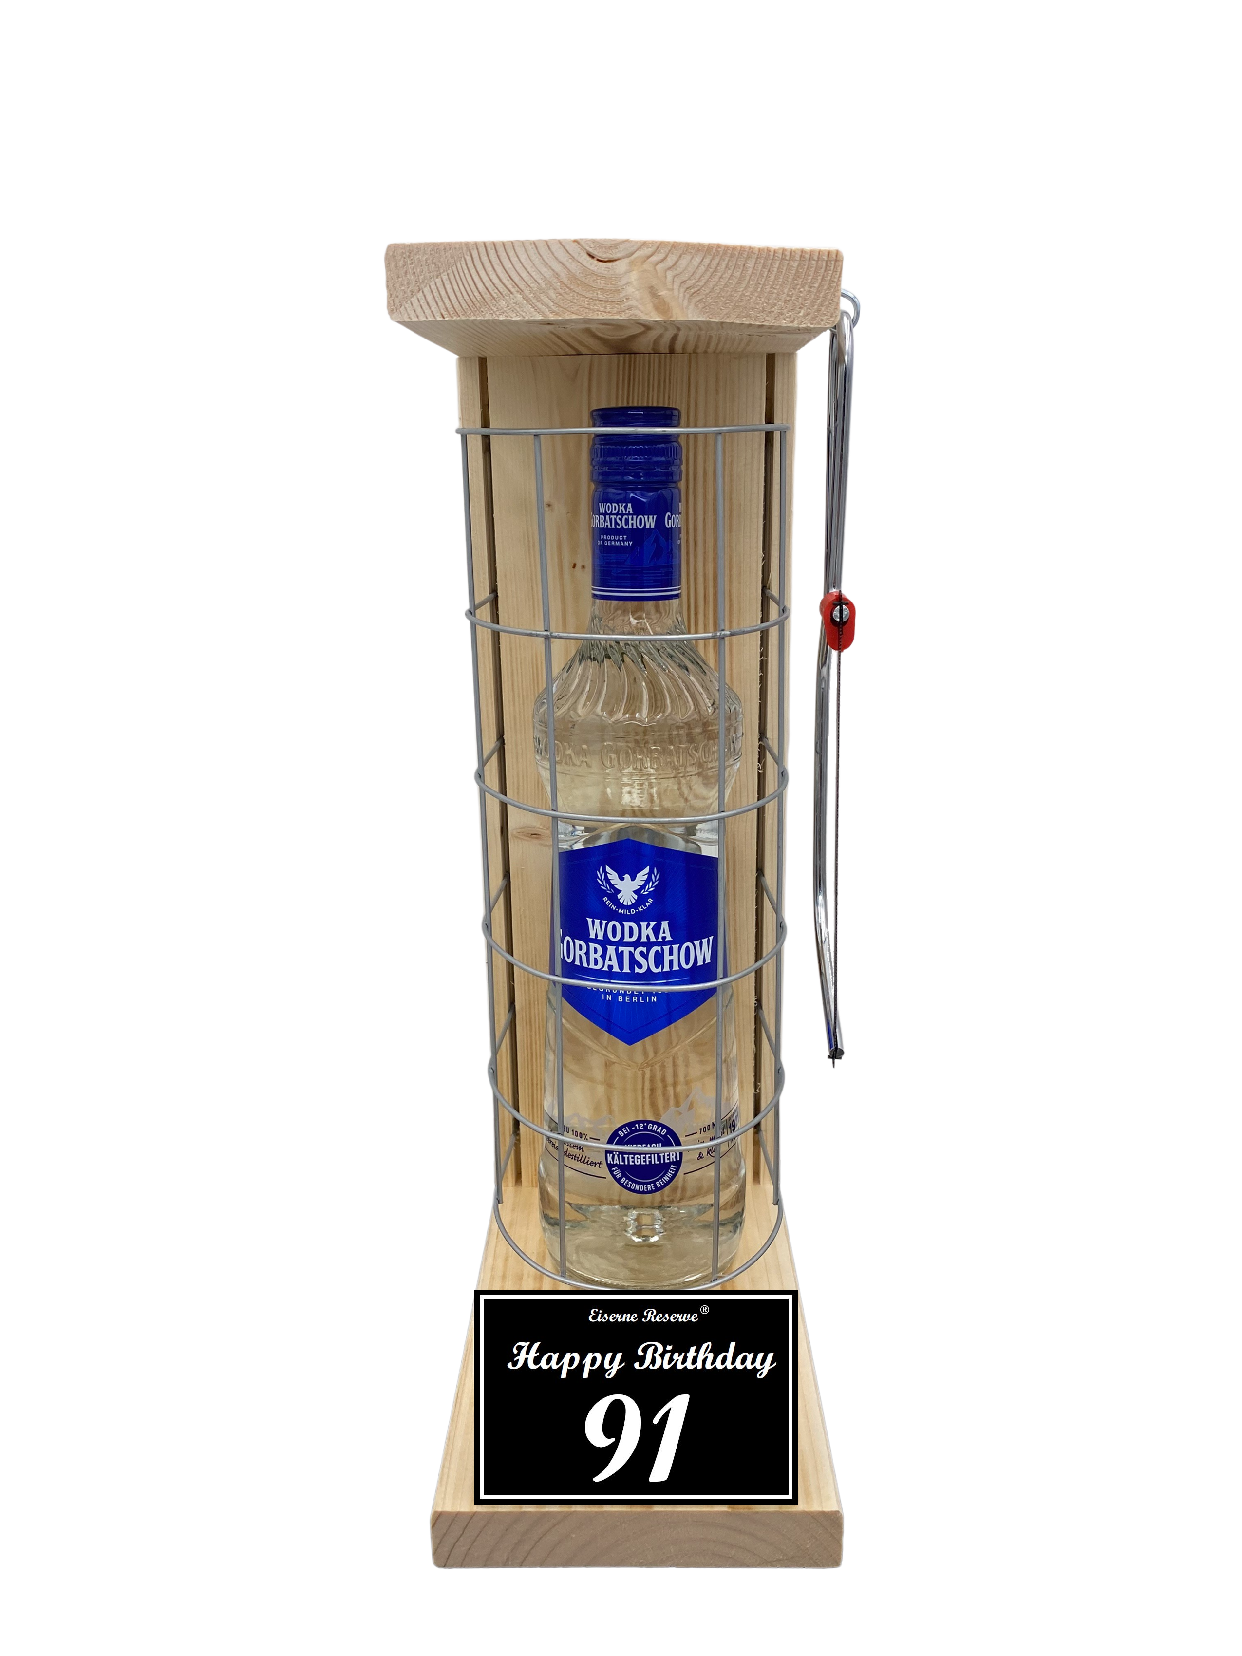 Wodka Geschenk zum 91 Geburtstag - Eiserne Reserve Gitterkäfig